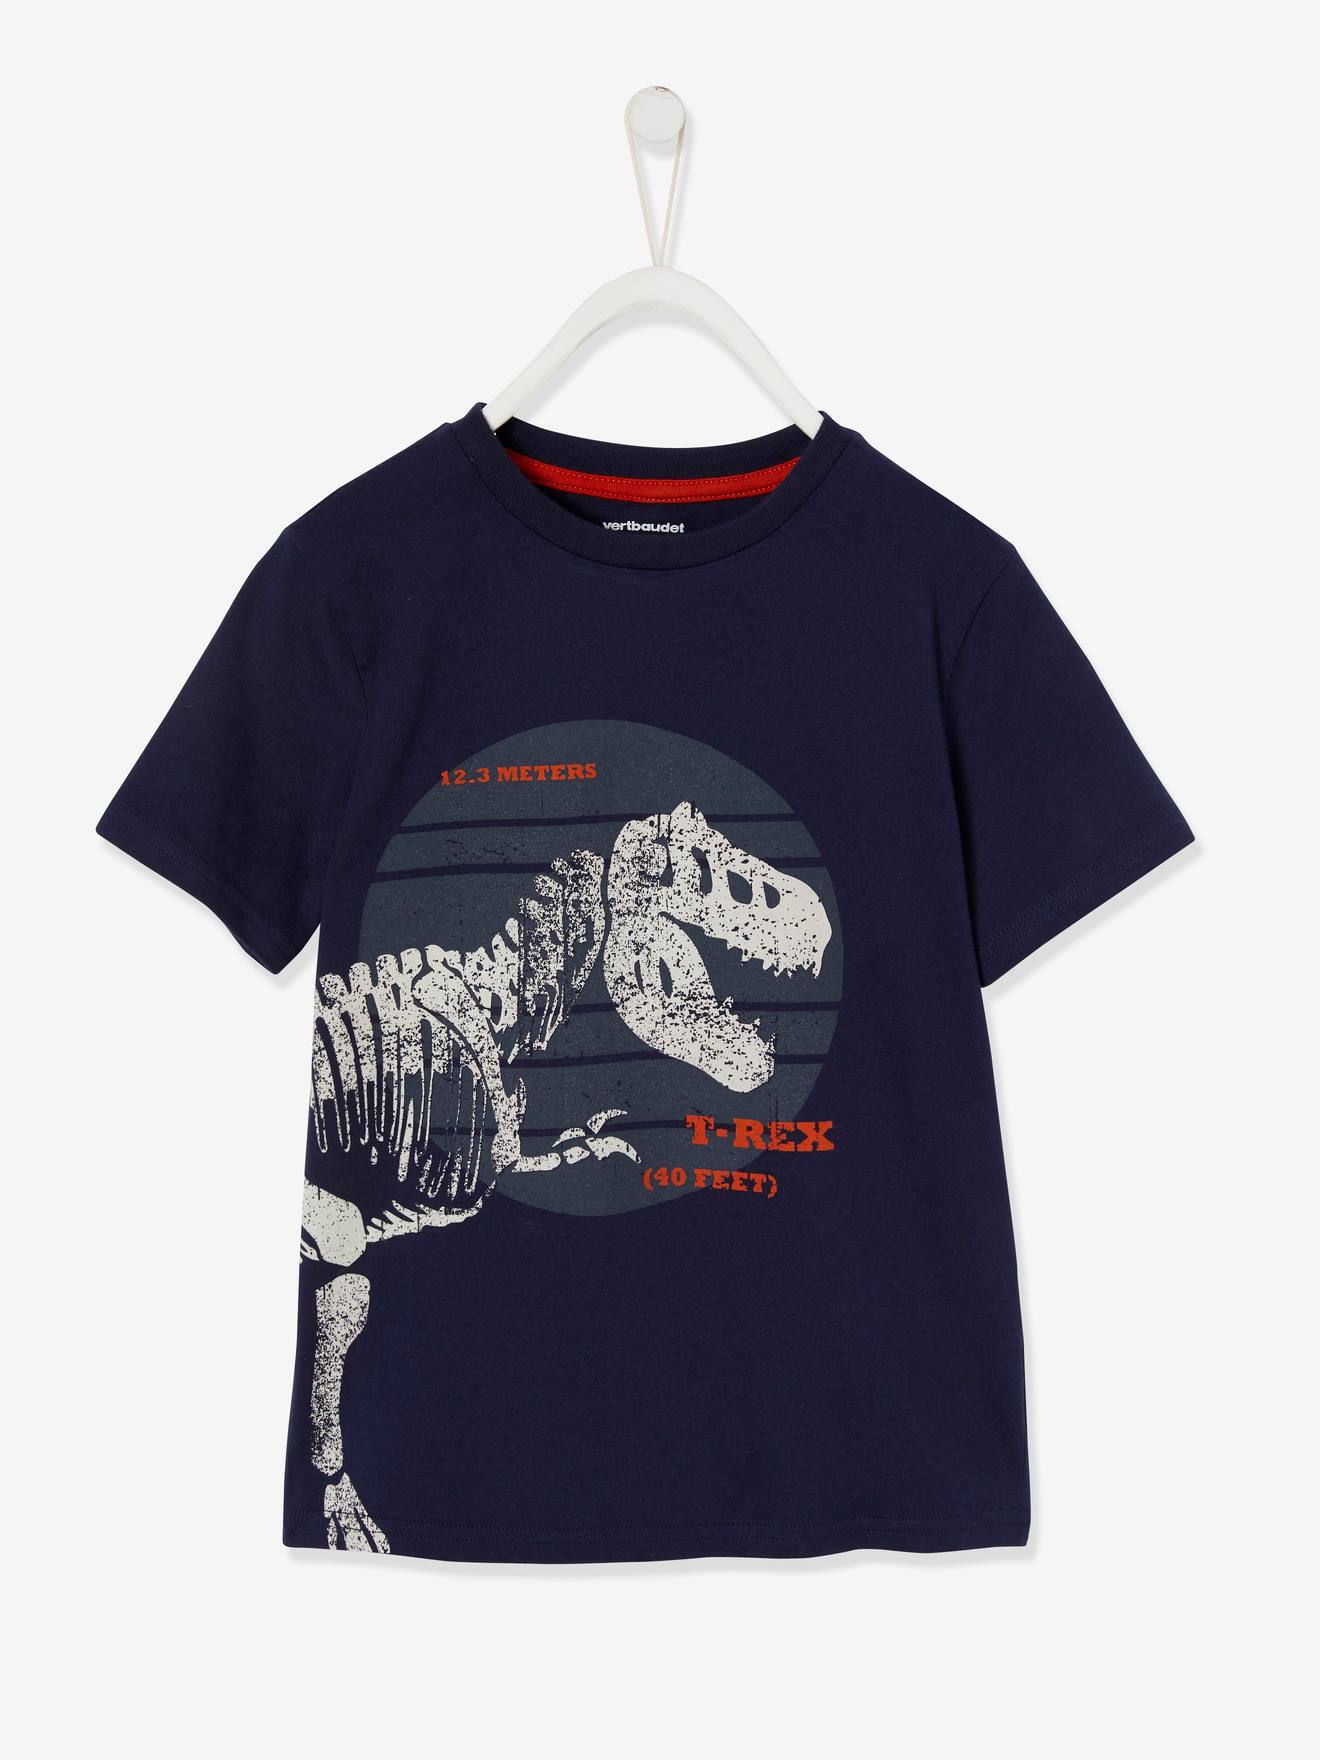 VERTBAUDET Camiseta con dinosaurio gigante, para niño azul fuerte liso con motivos